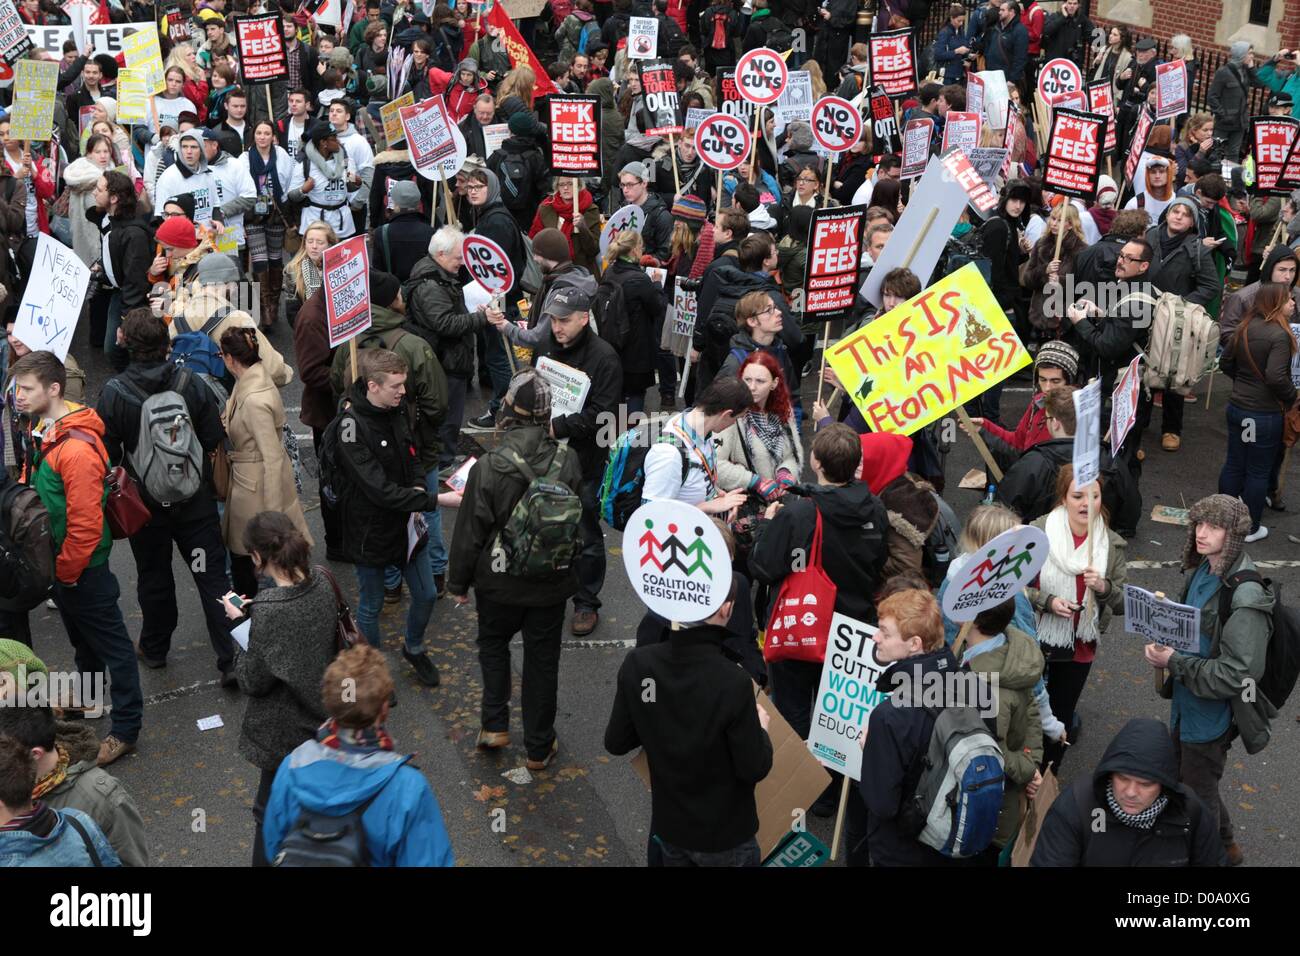 Londres, Royaume-Uni. 21 novembre 2012. Des milliers d'étudiants ont défilé dans le centre de Londres aujourd'hui sous le slogan de "educate, employer, empower". Malgré les craintes de la police et des organisateurs d'une répétition de la violence vu à une manifestation similaire en 2010, le mars est restée calme. George Henton / Alamy Live News. Banque D'Images